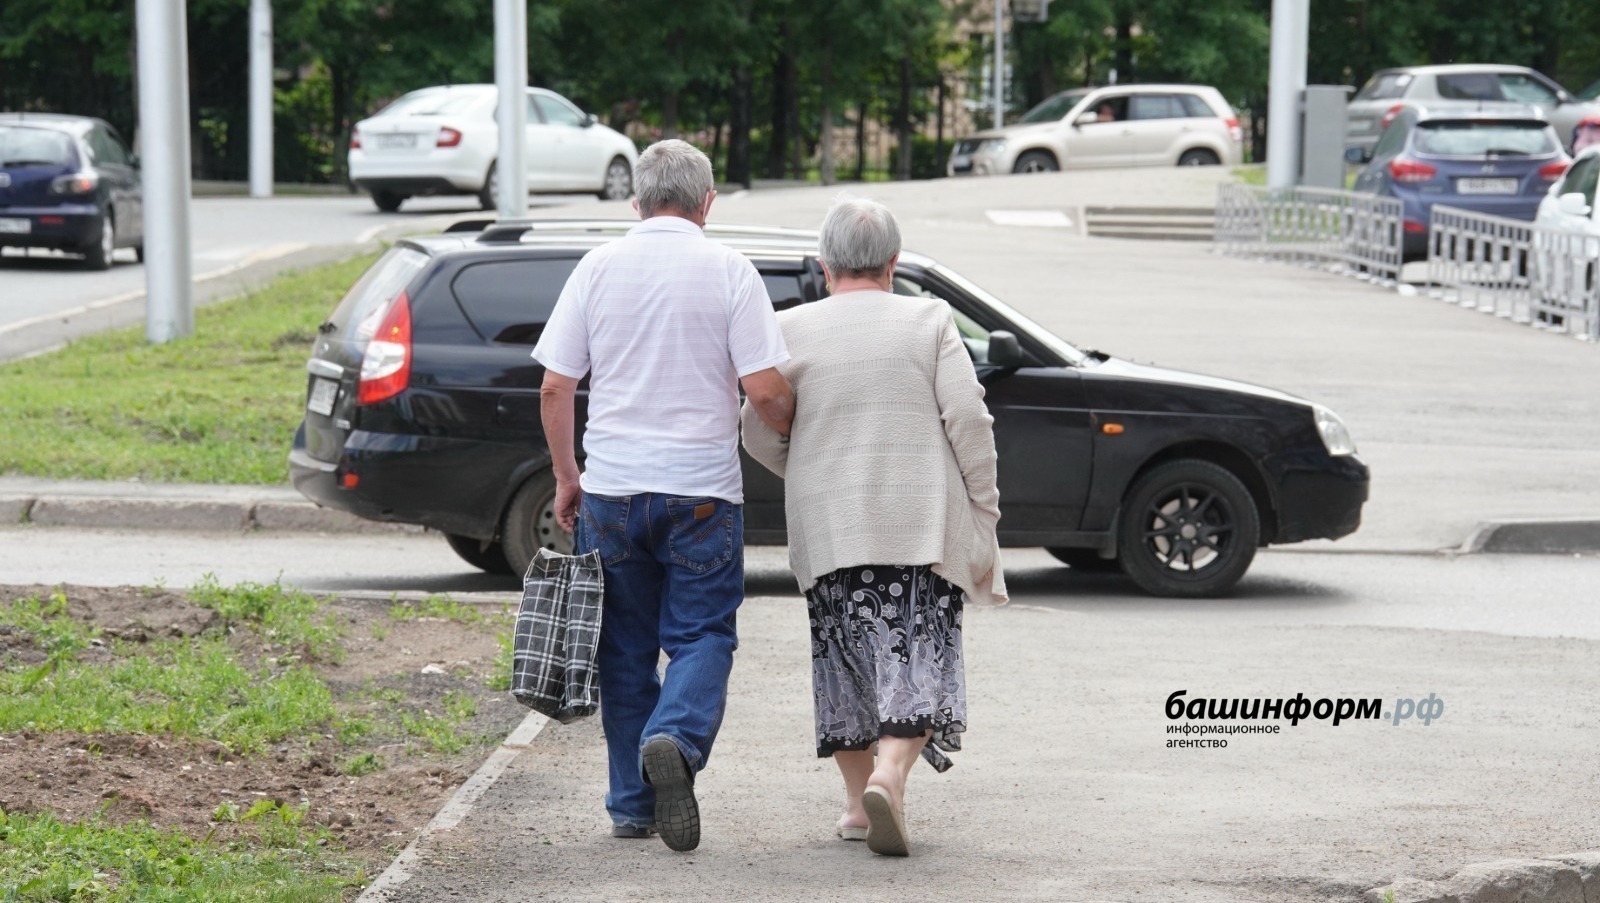 Пожилым и инвалидам - уход, забота и внимание государства